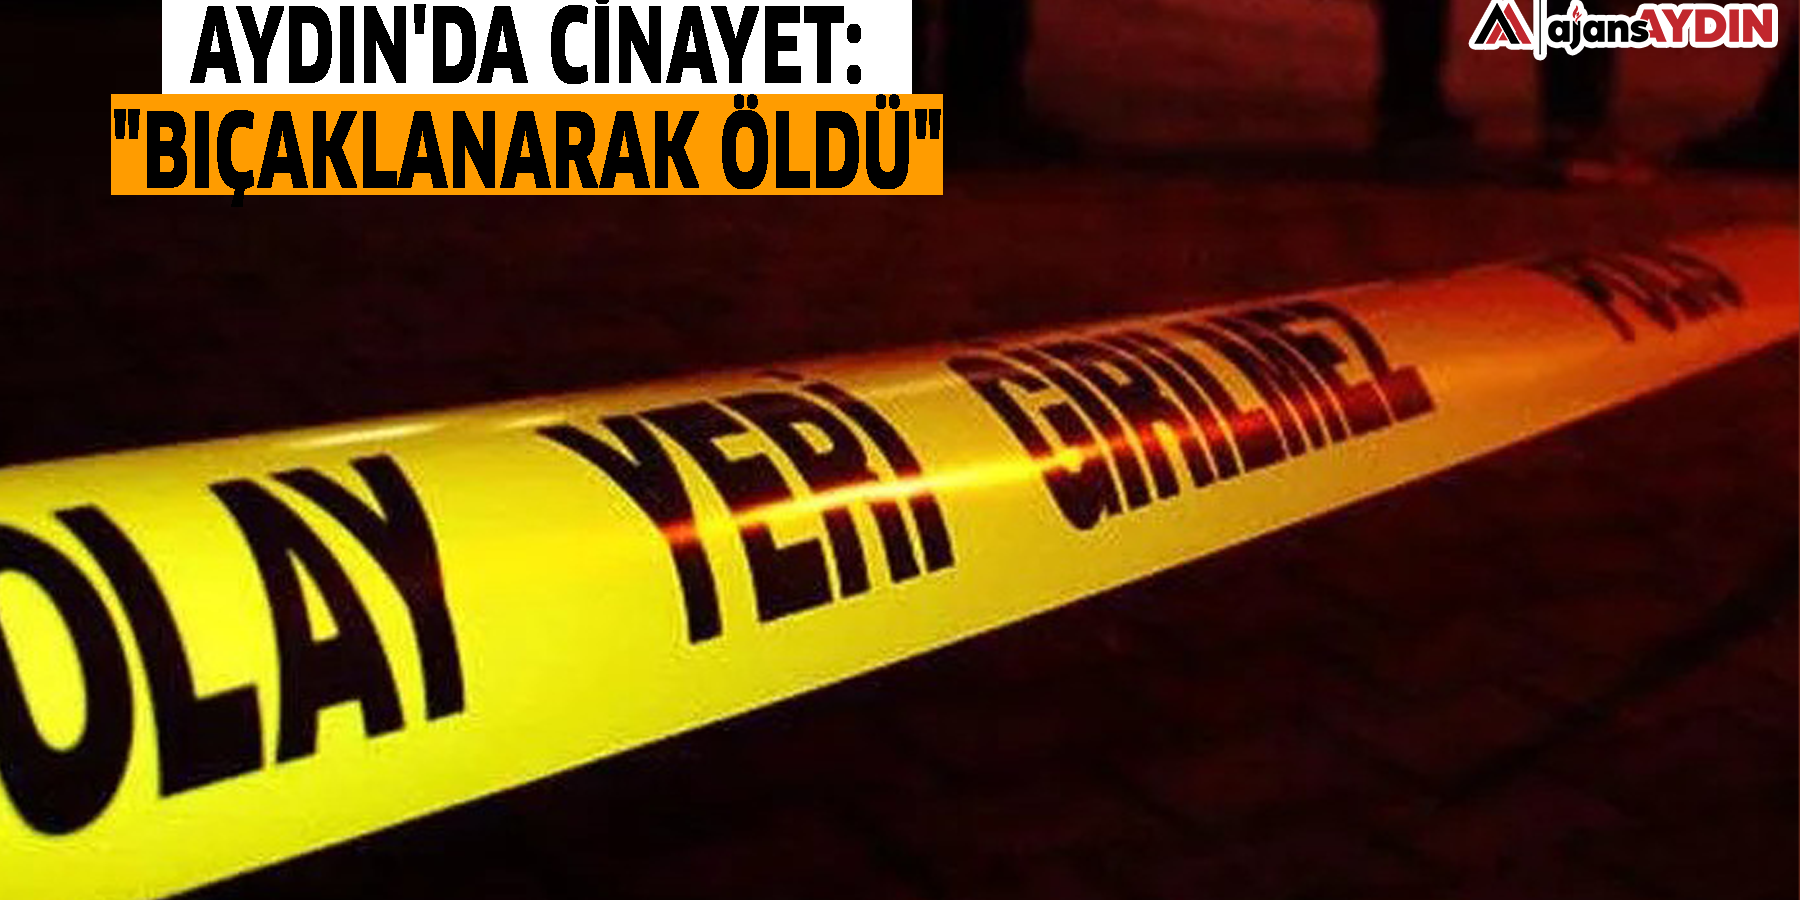 Aydın'da cinayet: "Bıçaklanarak öldü"